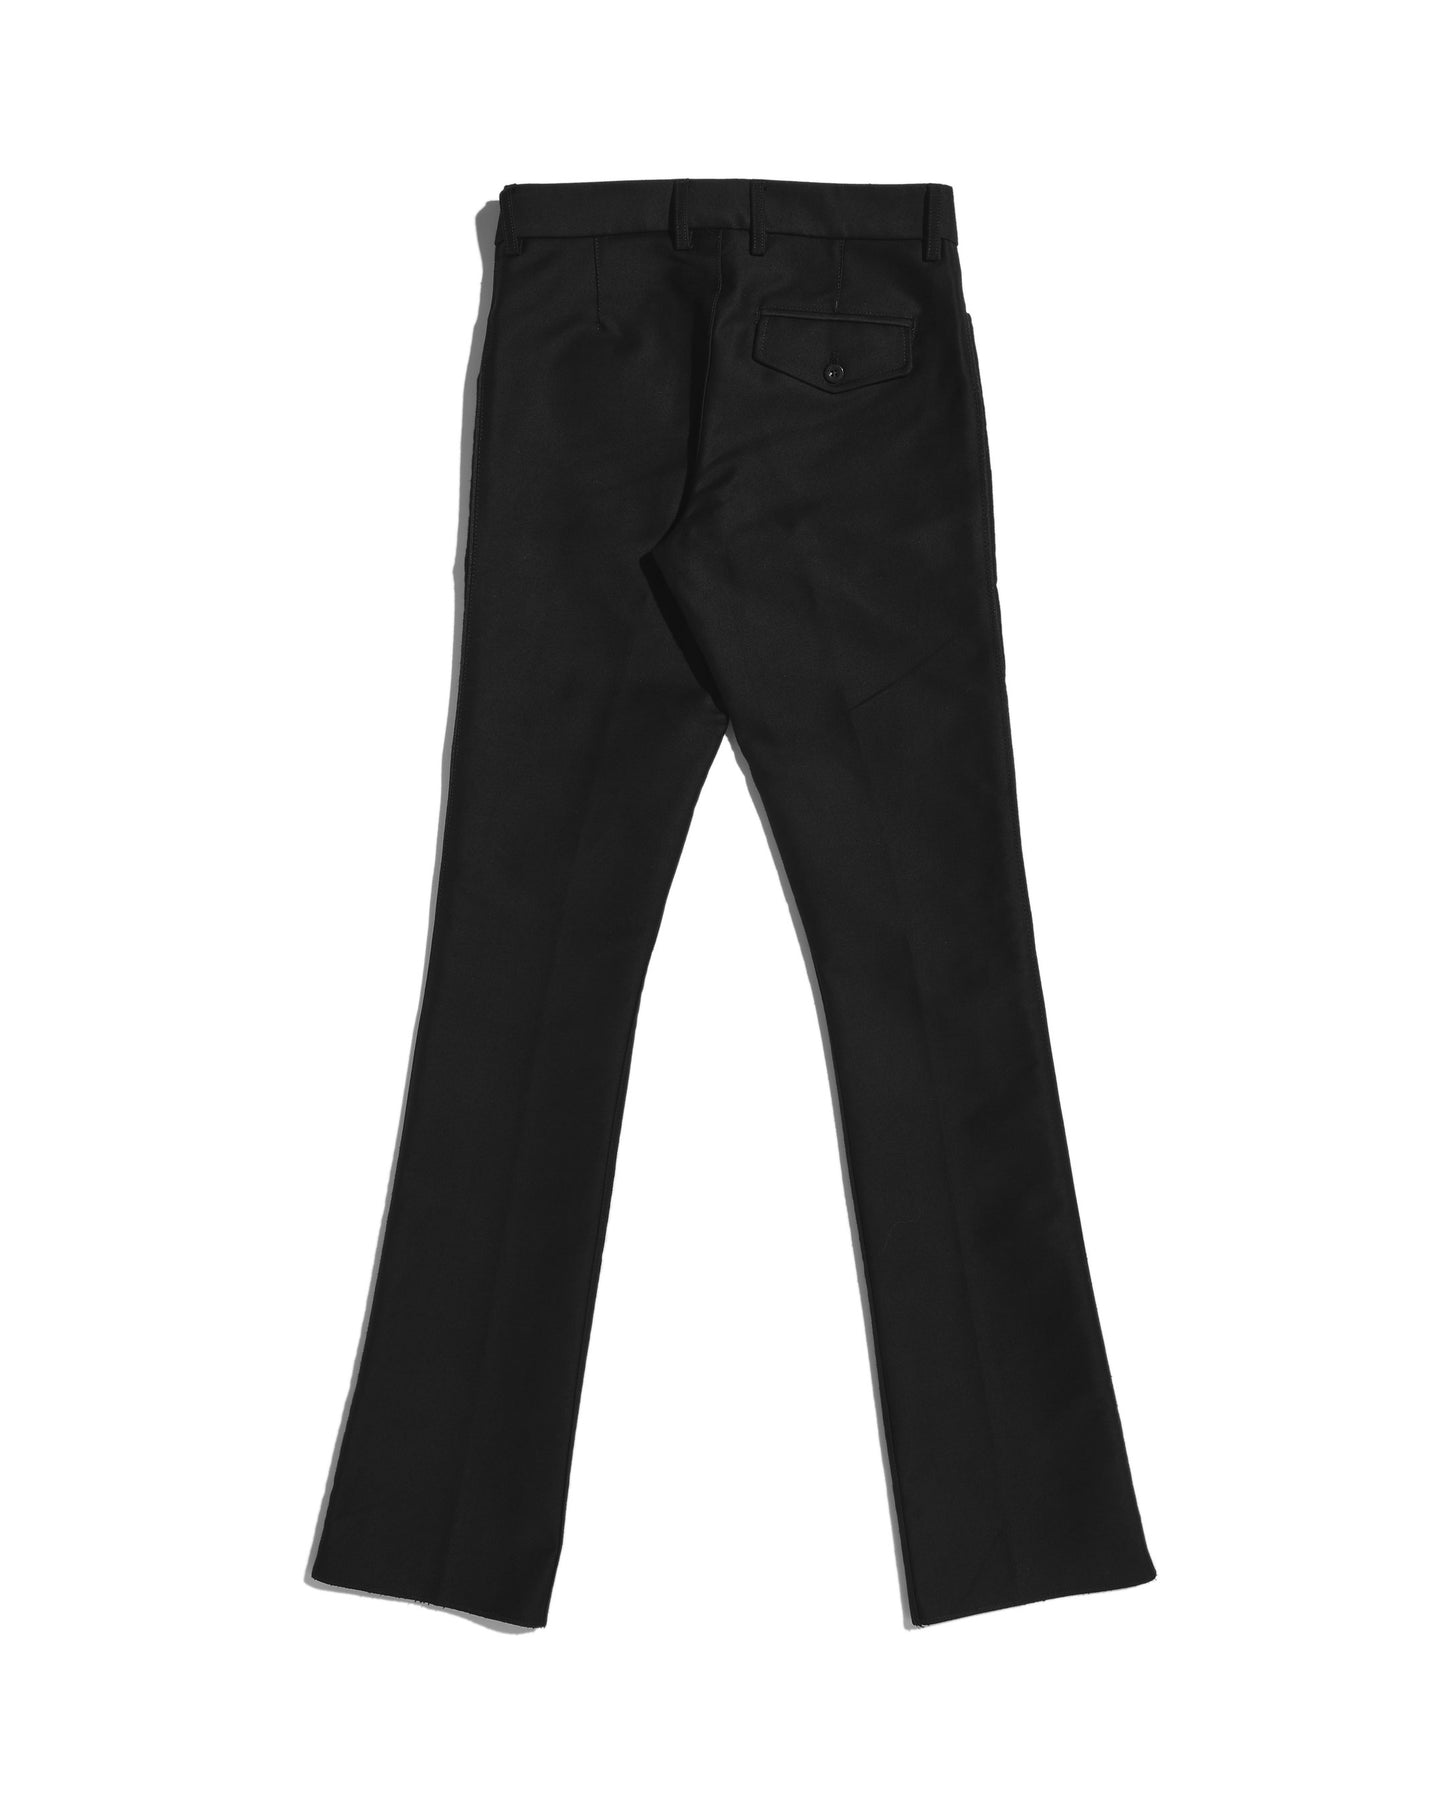 Pantalon de gardian moleskine (Taille 34 remisée) - noir - Indiennes de Nîmes